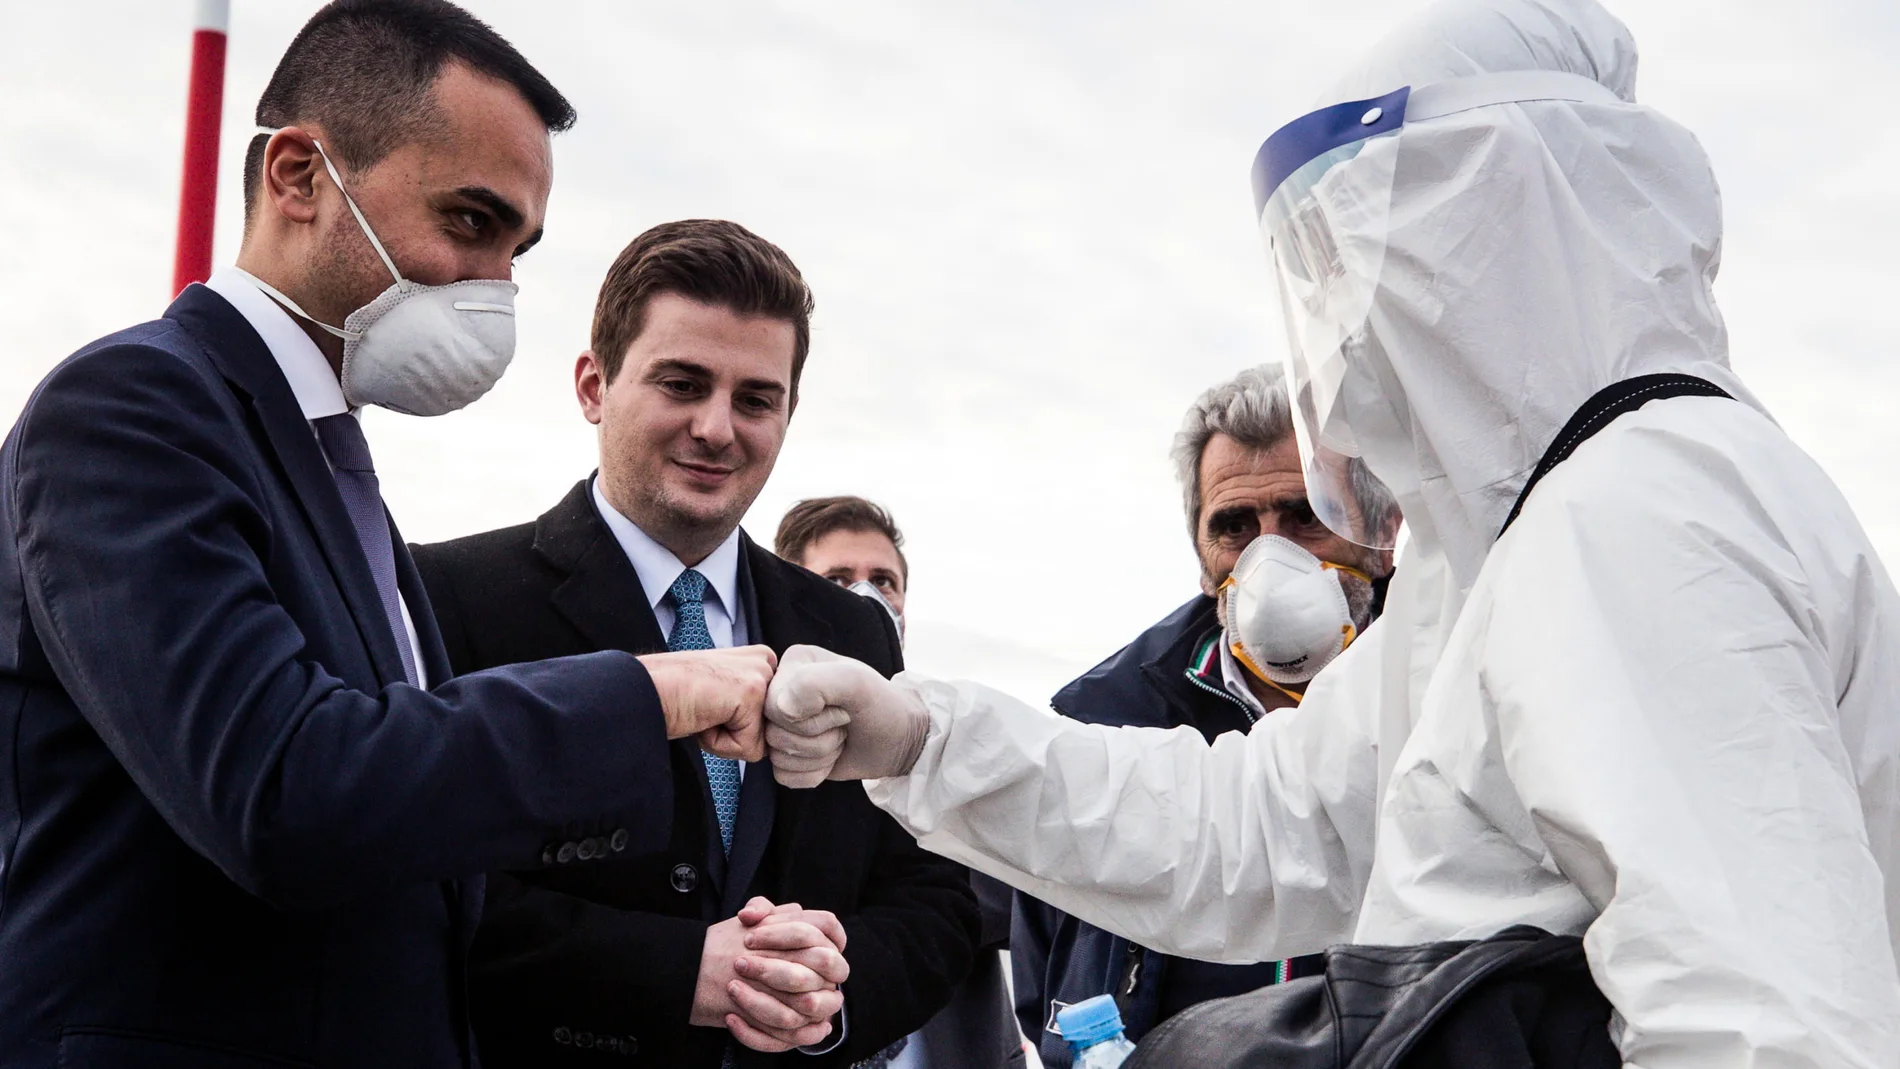 El ministro de Asuntos Exteriores Luigi Di Maio da la bienvenida su homólogo albanés Gent Cakaj y al equipo de médicos llegados a Italia